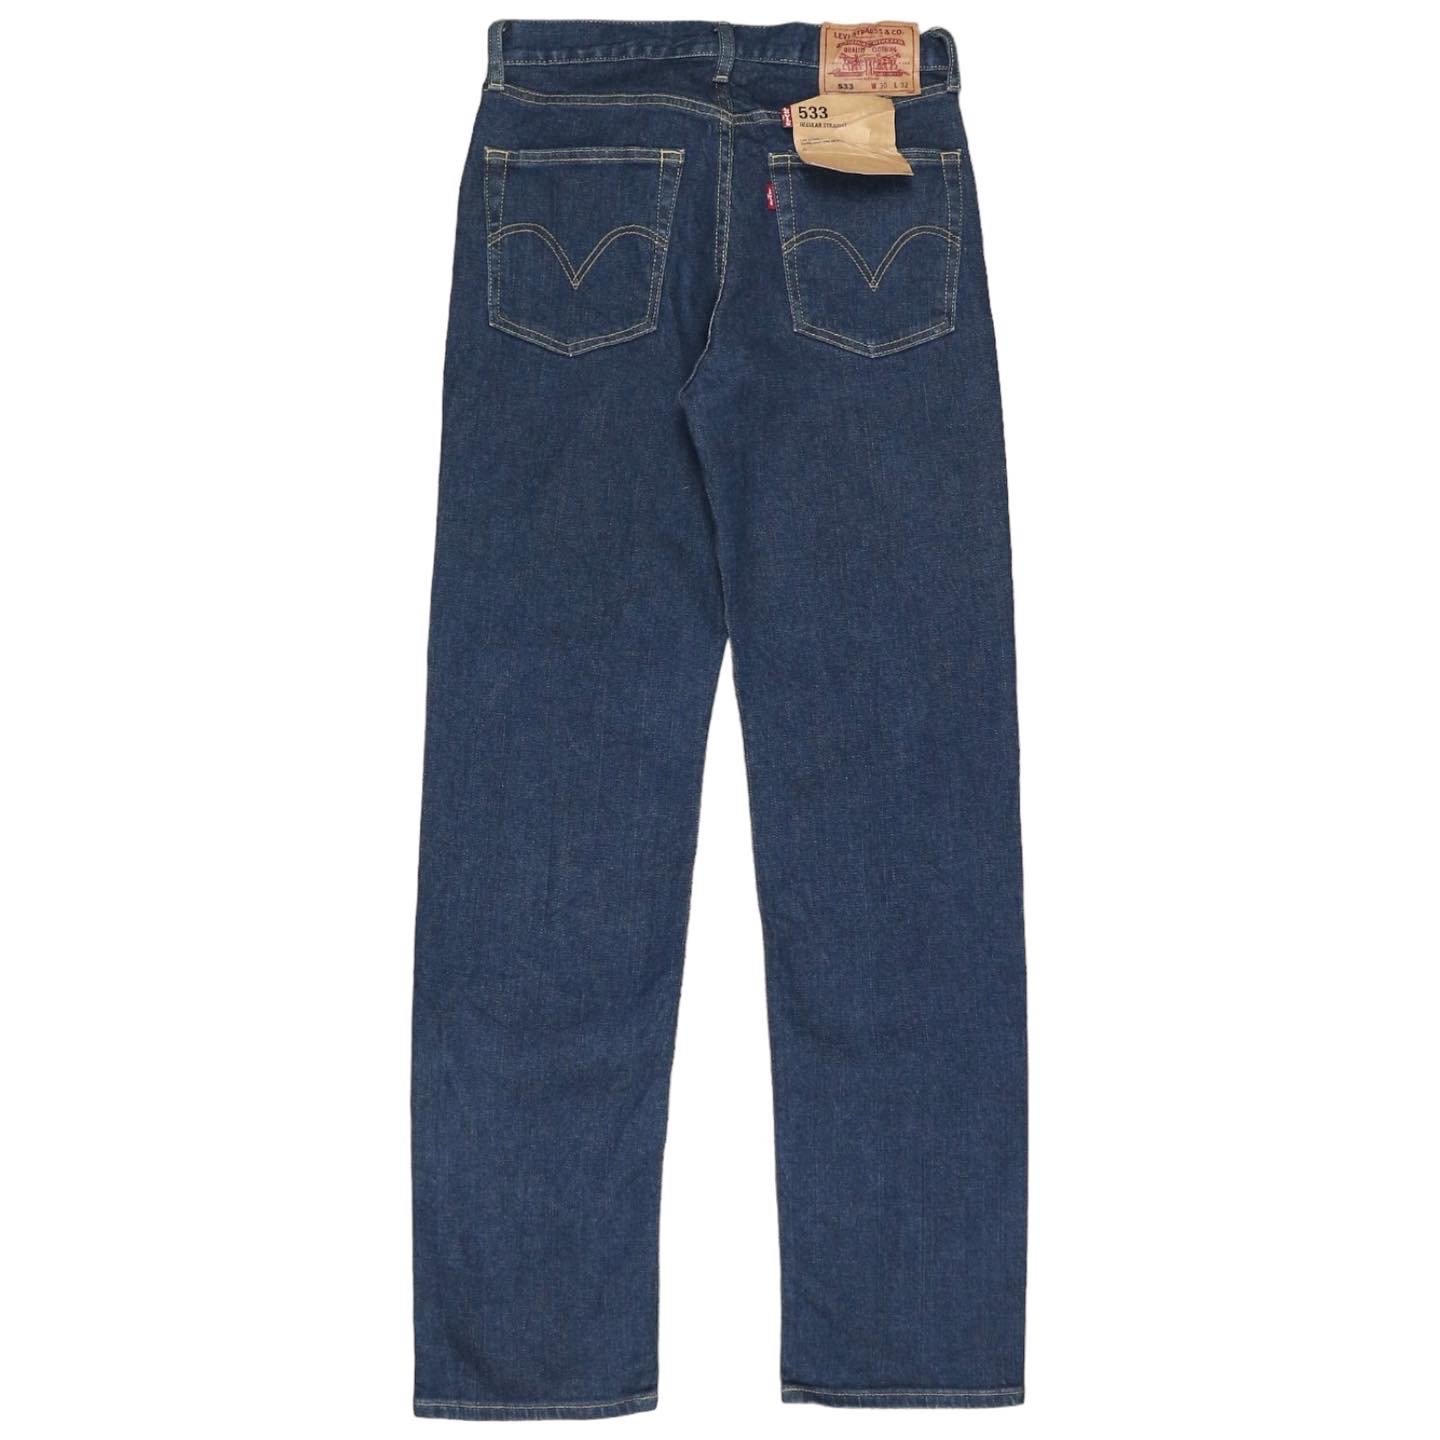 Levi's 533 Denim Jeans Size 28